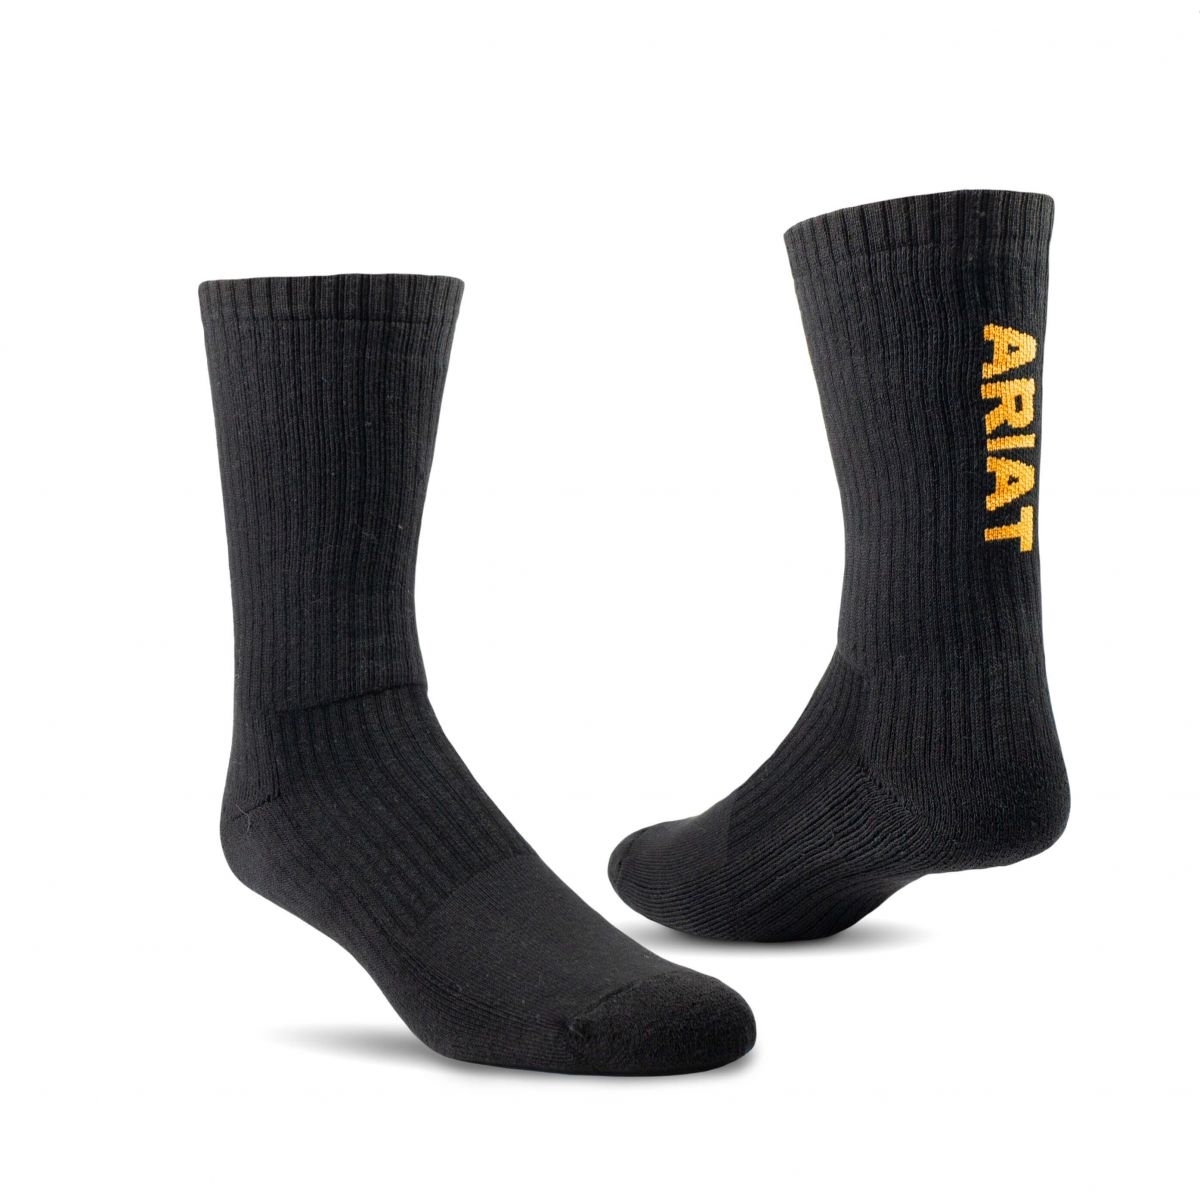 ARIAT Unisex Premium Ringspun Cotton Crew Work Socks Black 3-Pair Pack - AR2239-002 BLACK - BLACK, X-Large